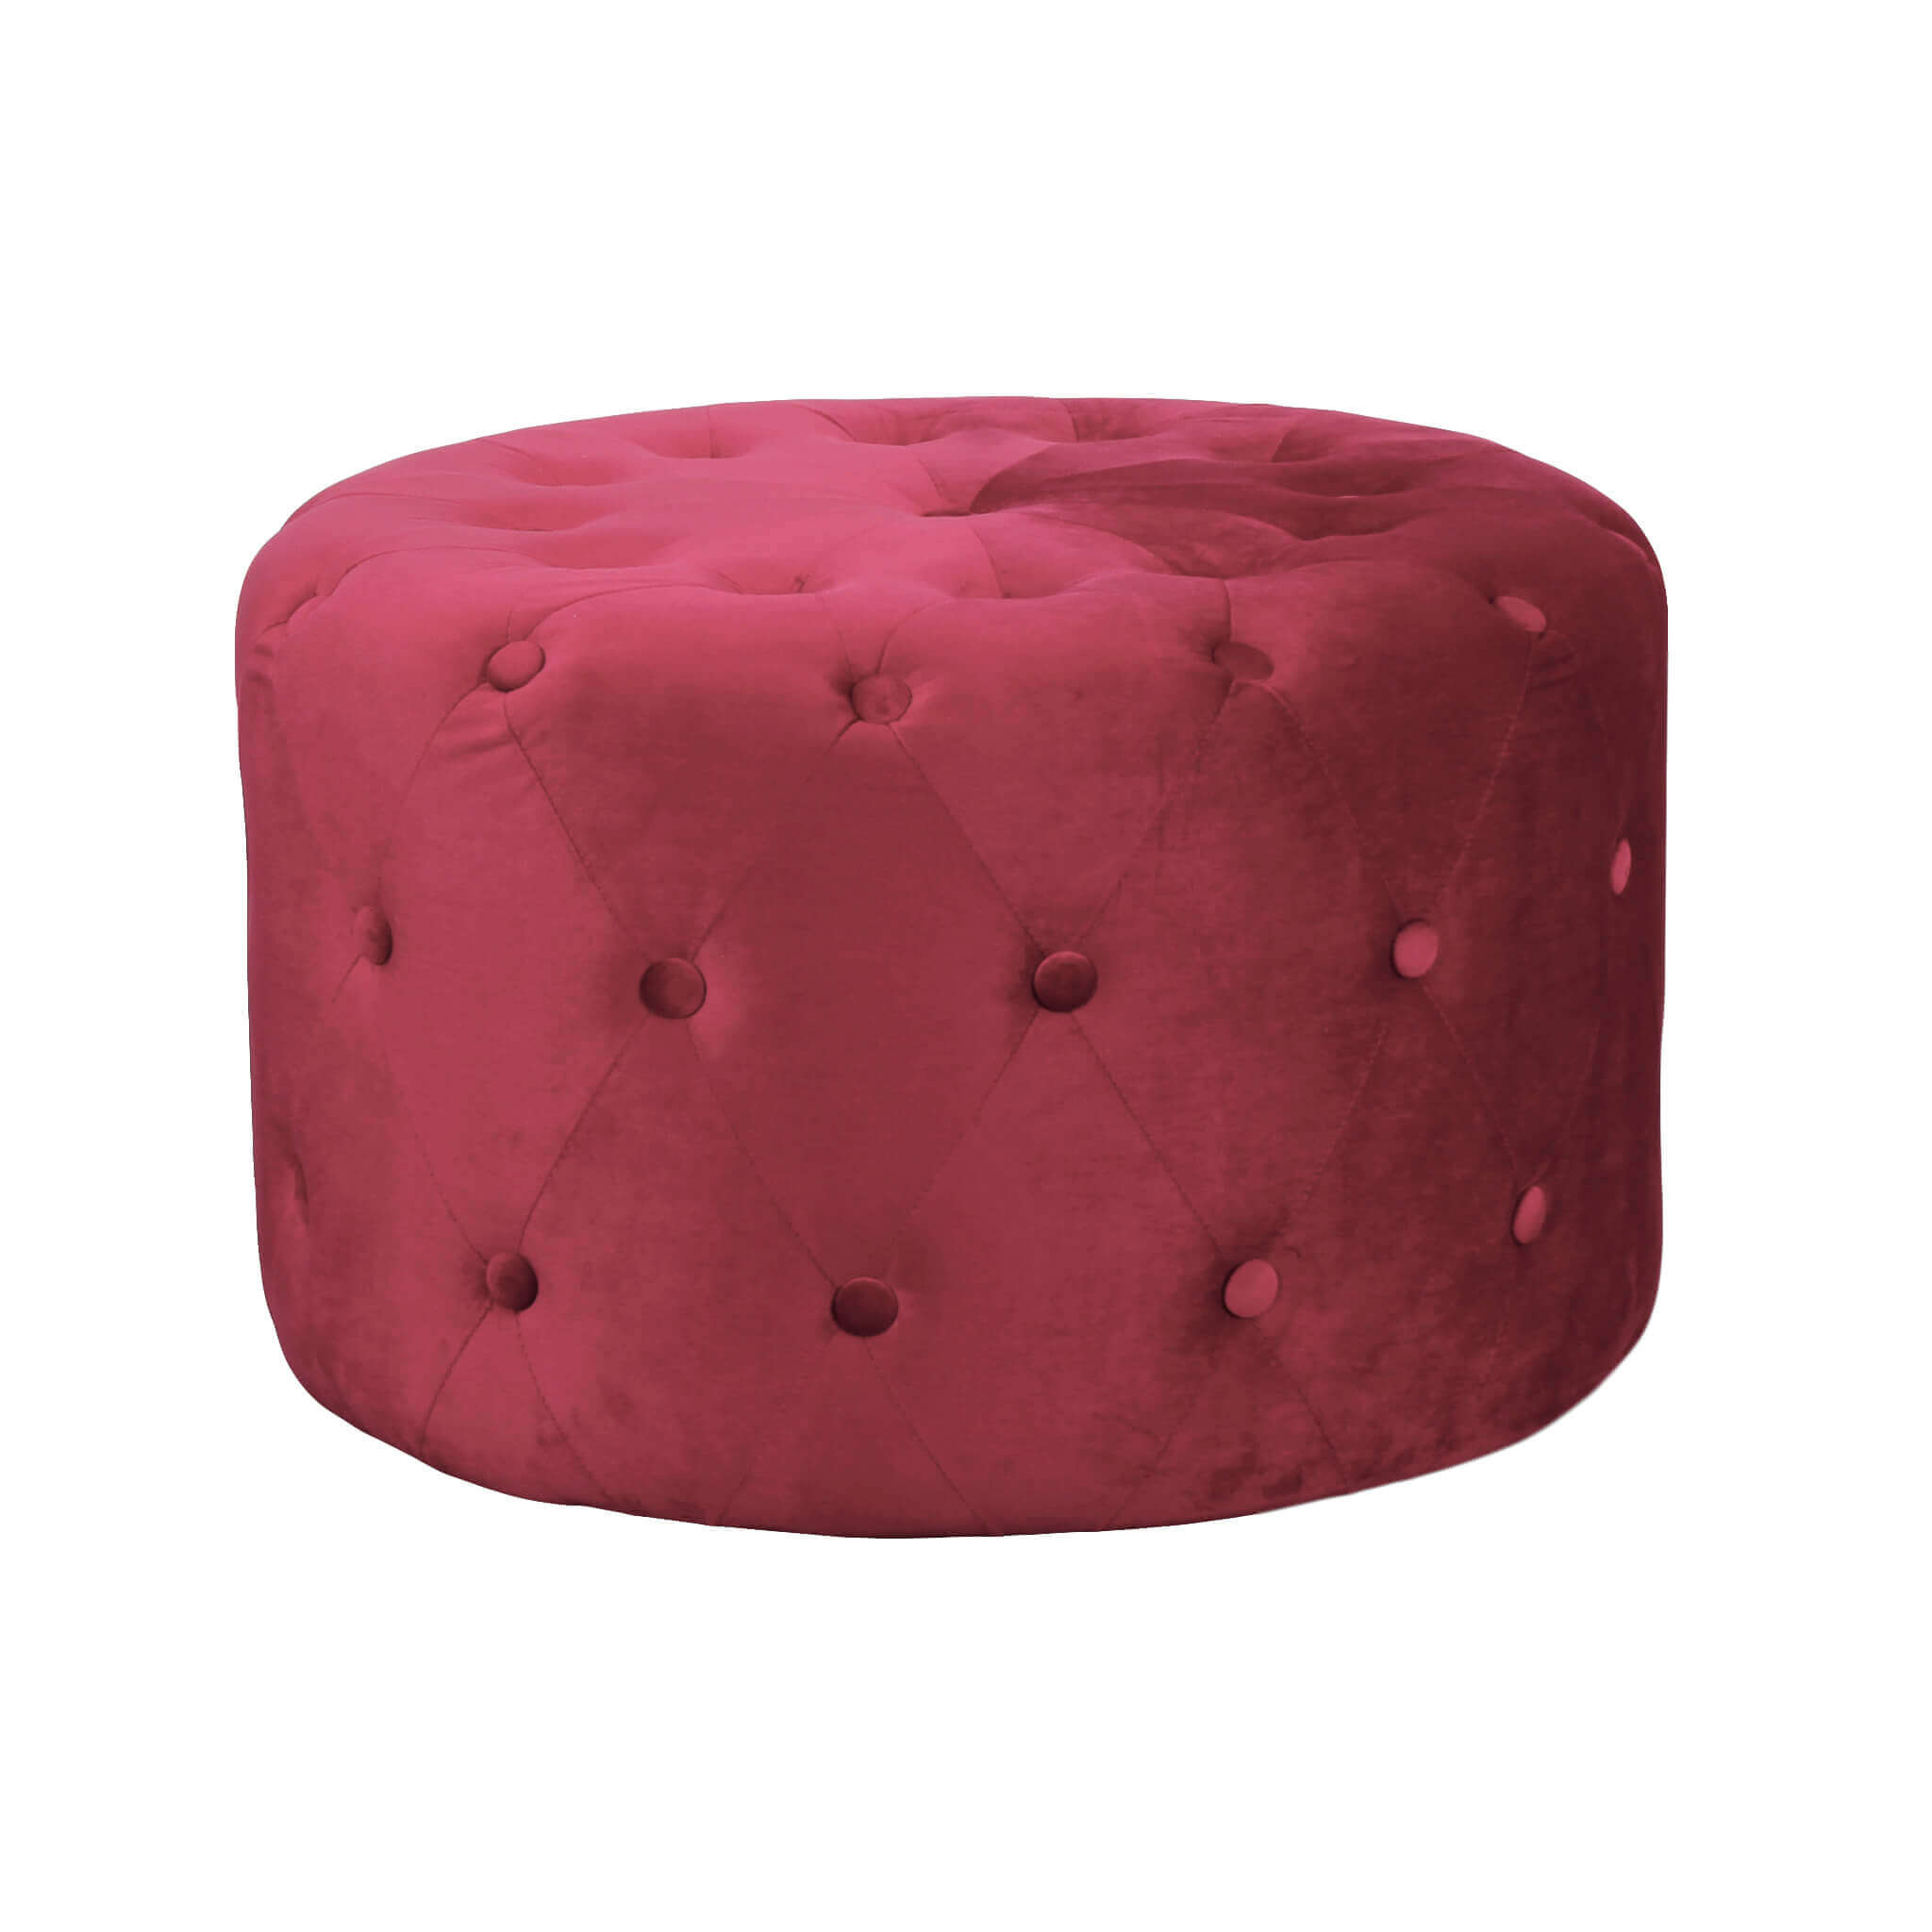 Milani Home pouf rotondo in velluto di design moderno, cm diametro 67 x 41 h Rosso x x 41 cm